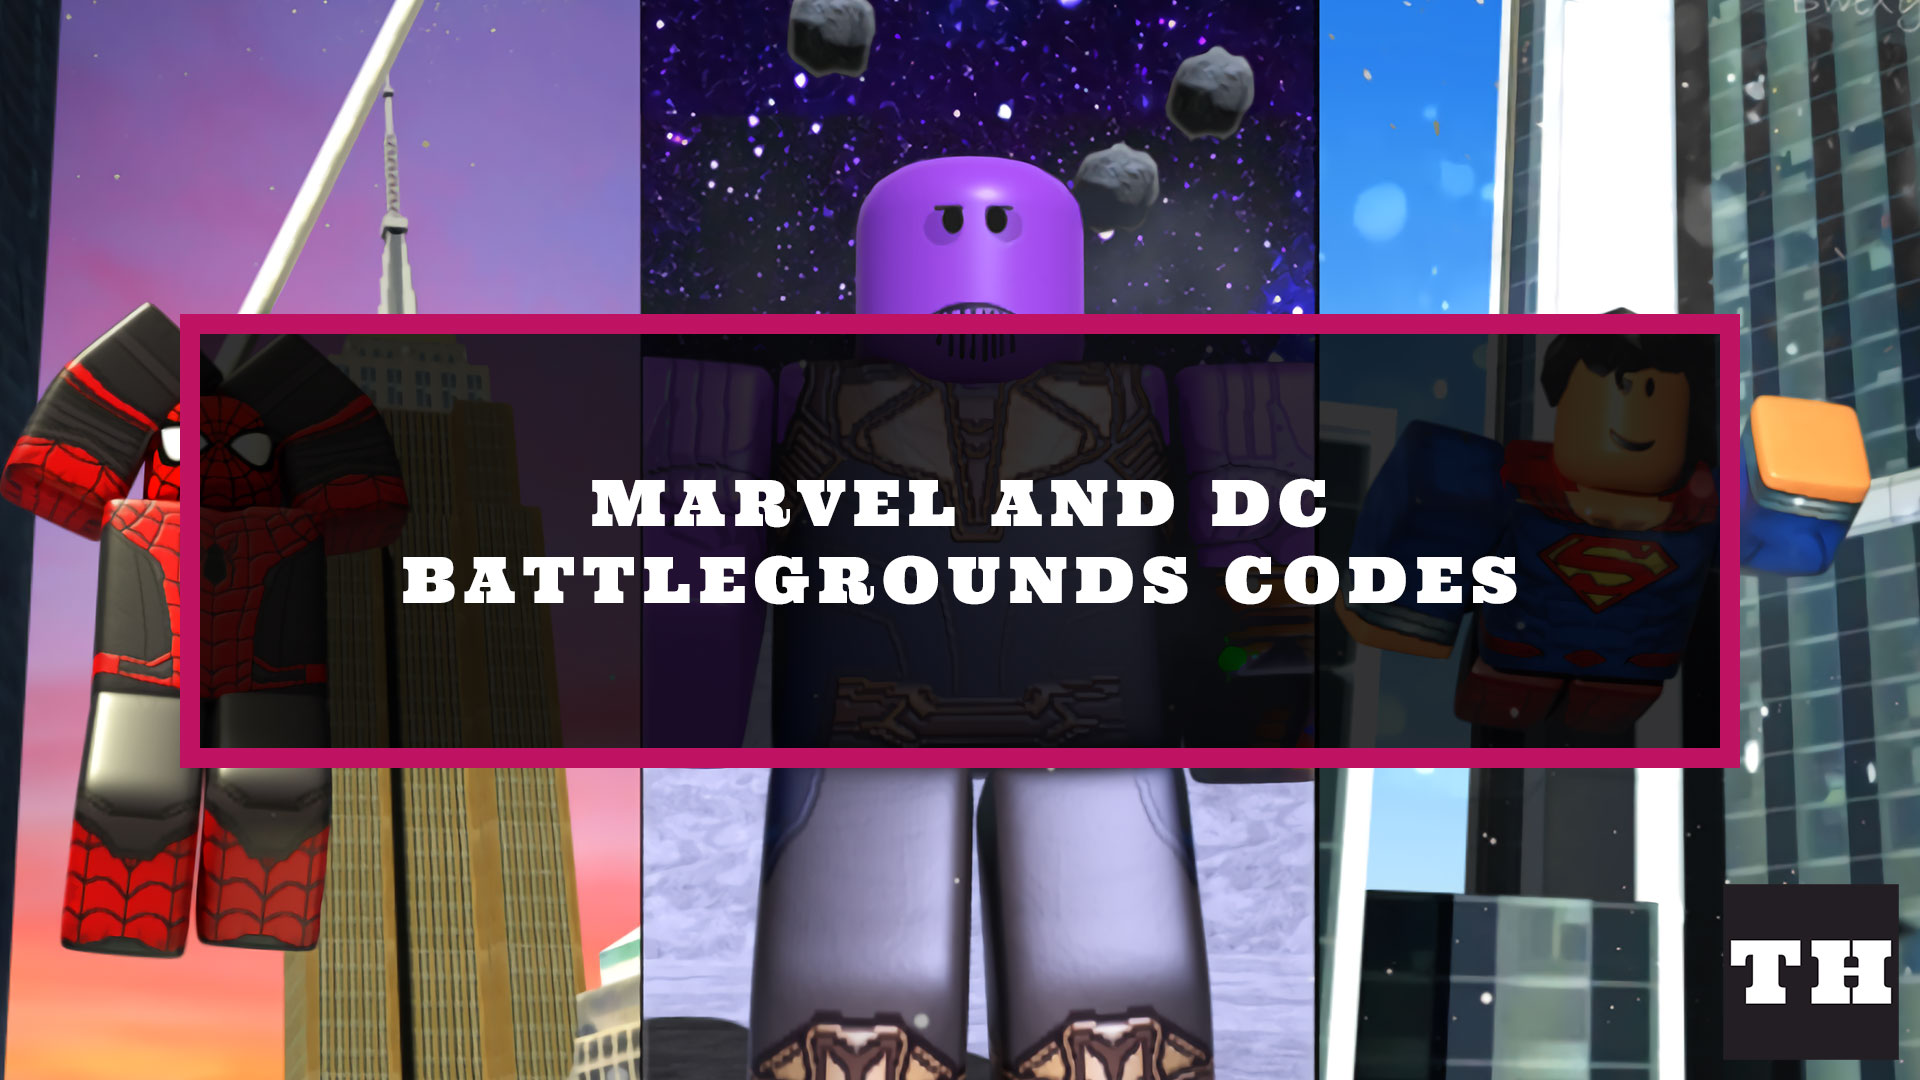 Roblox codes battlegrounds. Все коды в Marvel and DC Battlegrounds. Код Timestop Battlegrounds. Коды Fruit Battlegrounds. Самые сильные поля битвы РОБЛОКС.